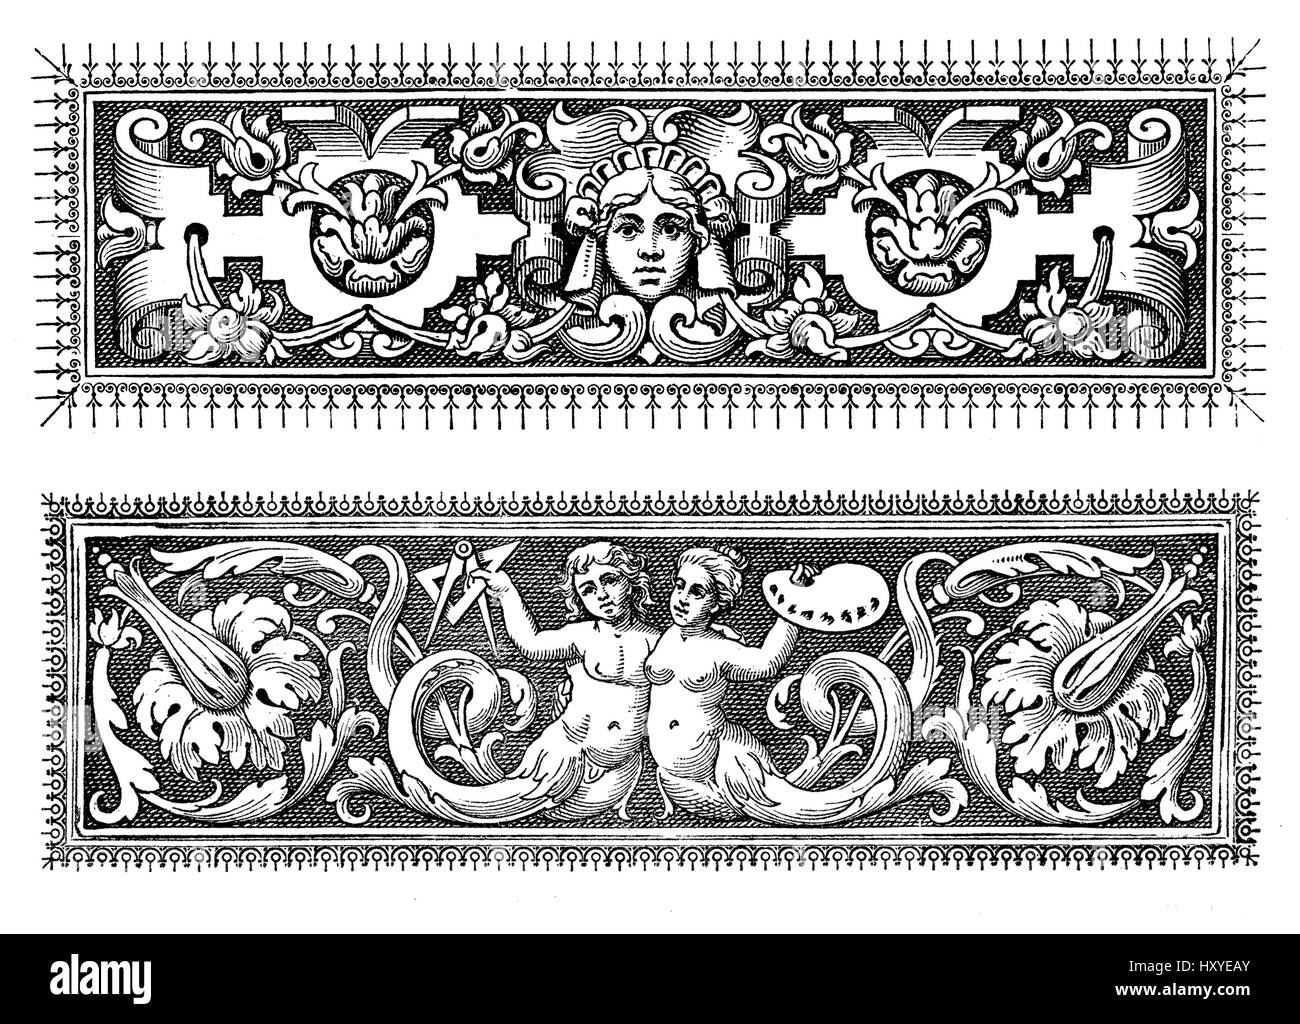 Due riccamente decorato in stile barocco frontiere tipografiche con figure, oggetti e motivi floreali Foto Stock